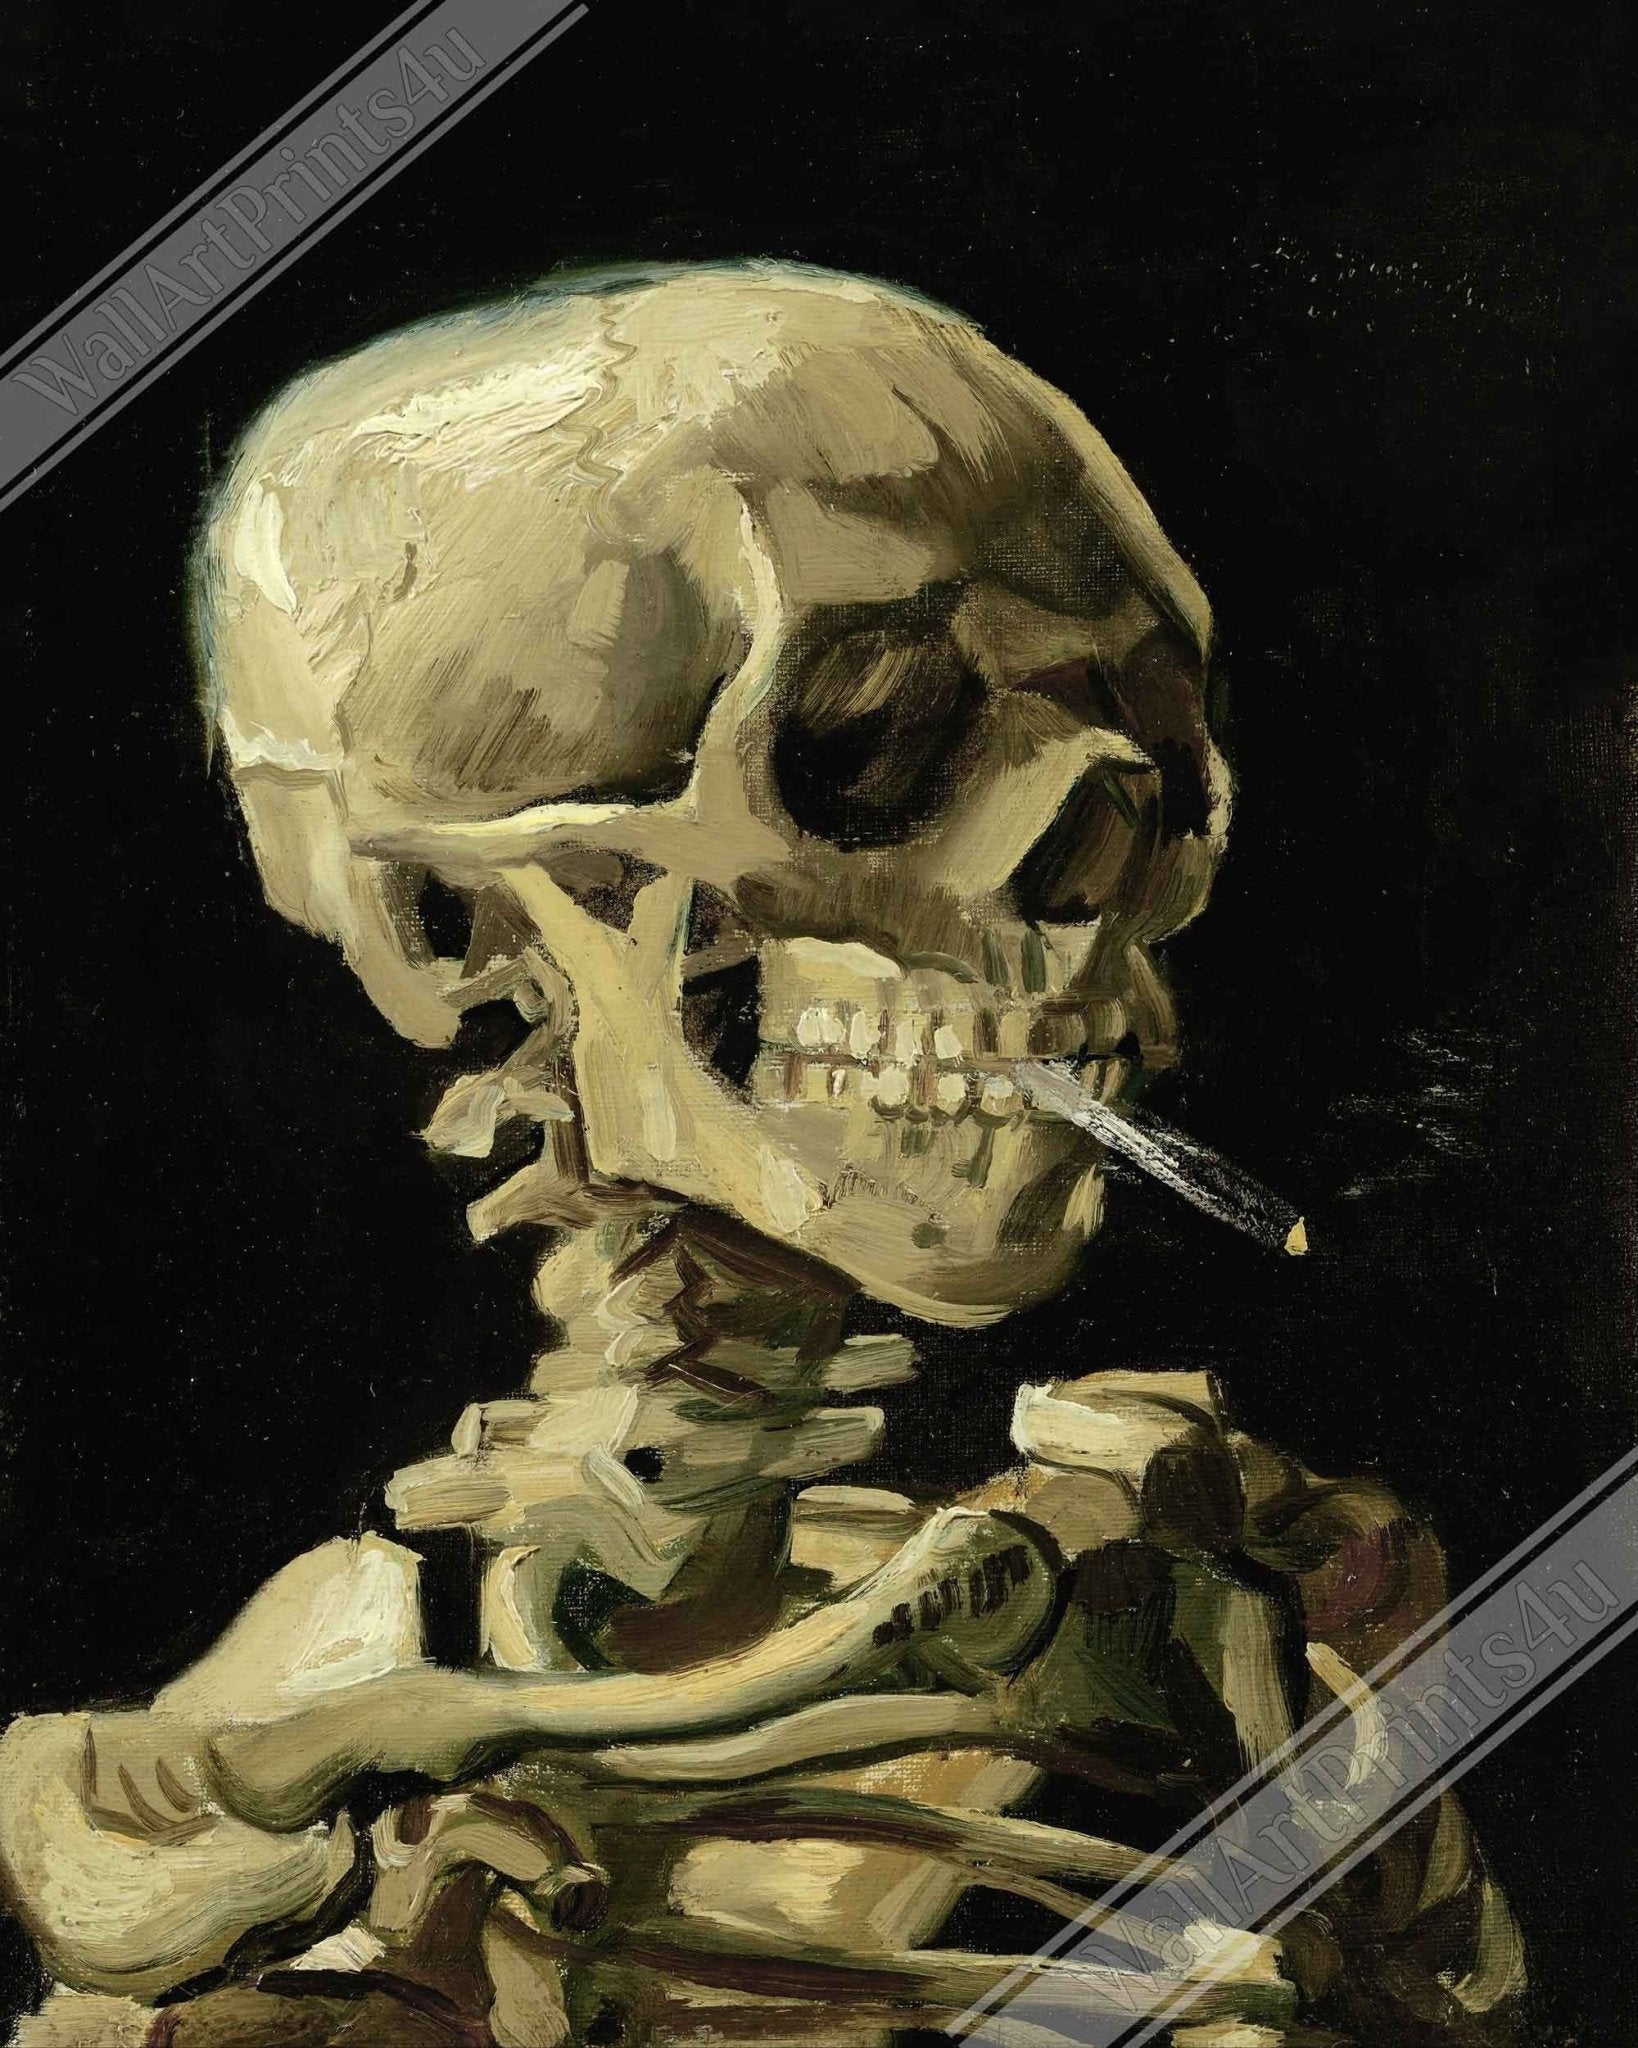 Van Gogh Skeleton With A Cigarette Framed - Skull With A Burning Cigarette Framed Print - WallArtPrints4U